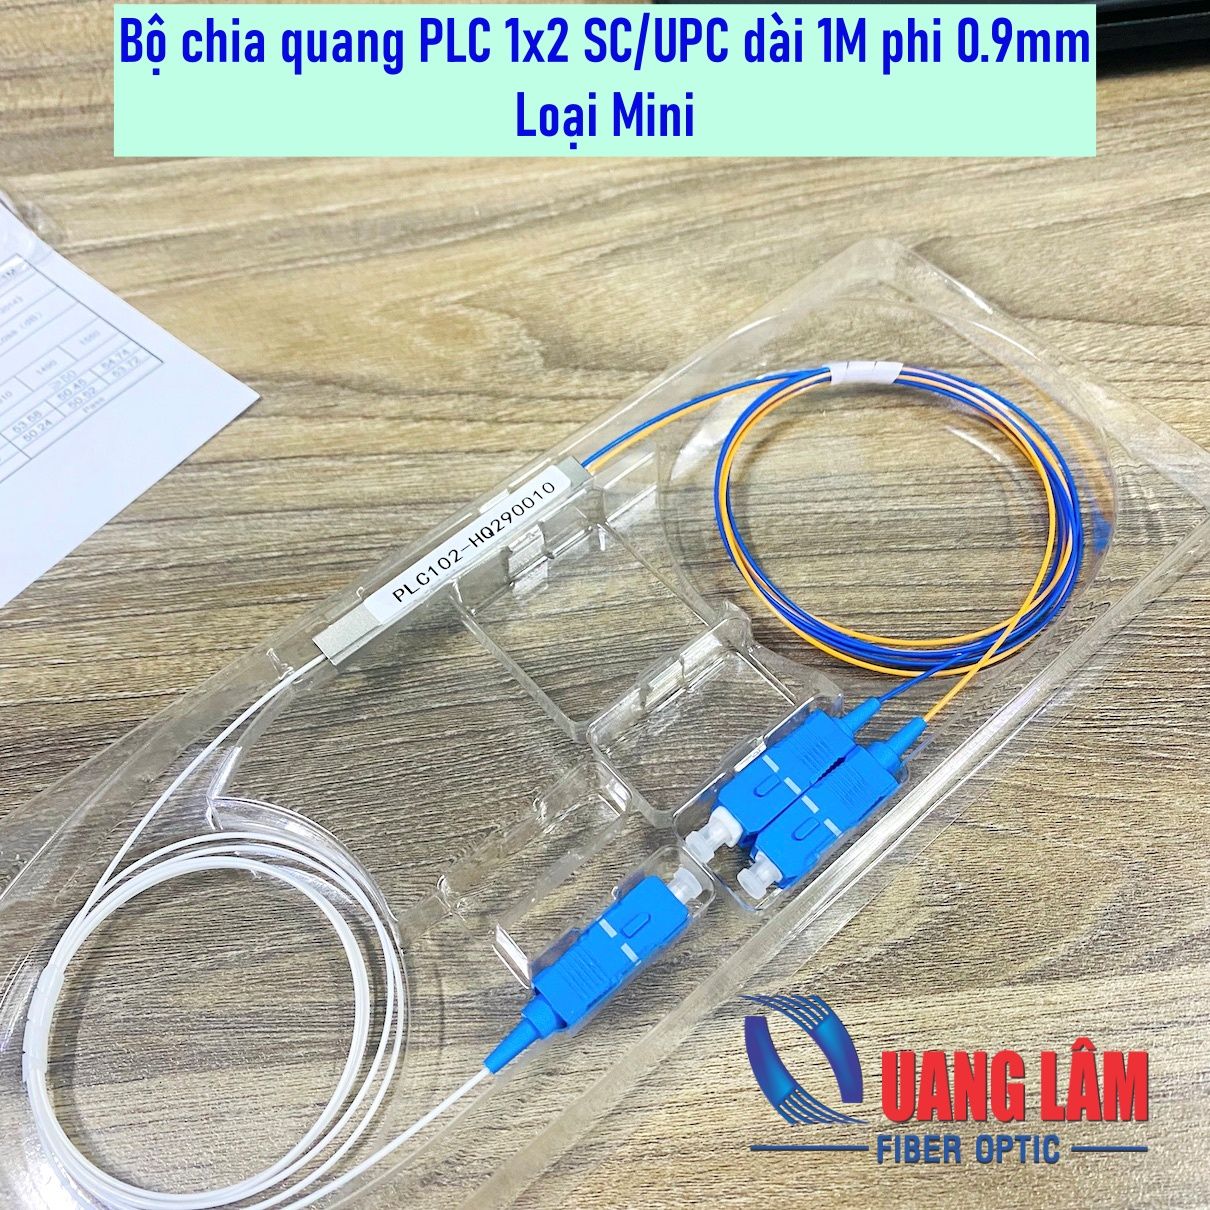 Bộ chia quang PLC 1x2 SC-UPC phi 0.9mm dài 1M (Loại Mini)